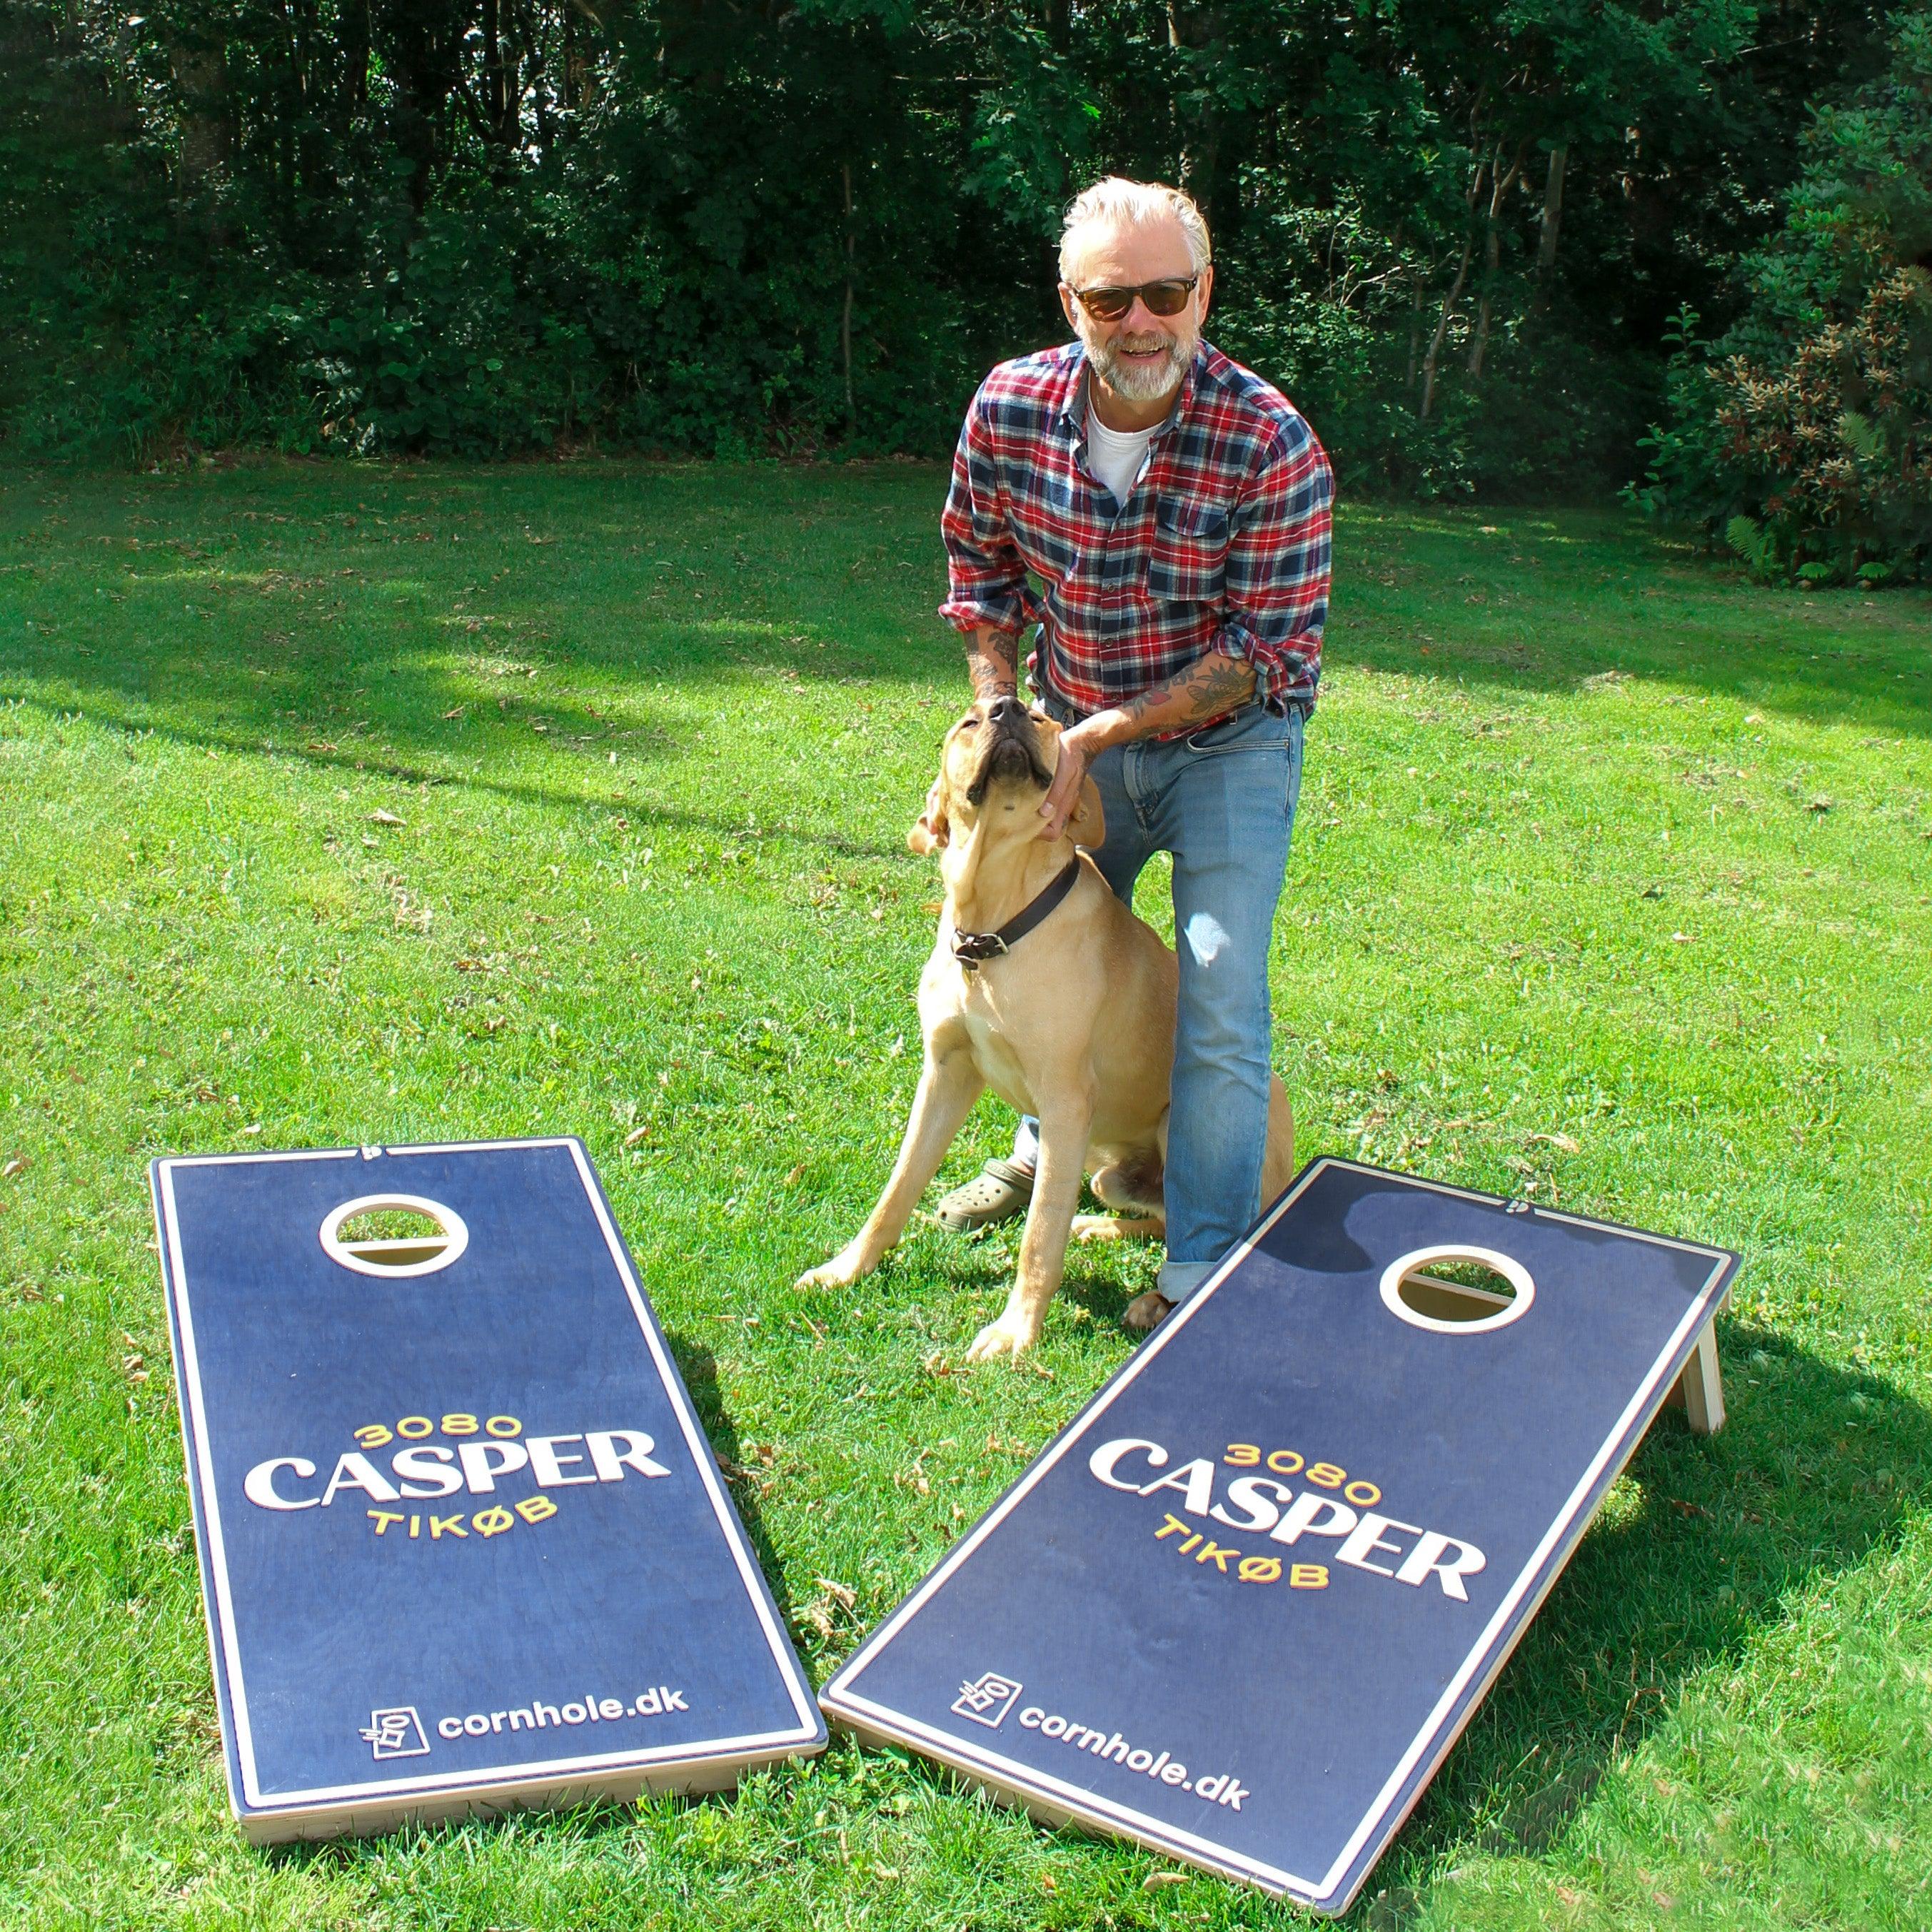 Casper Christensen står med 2 premium custom cornholesæt fra cornhole.dk sammen med hans hund